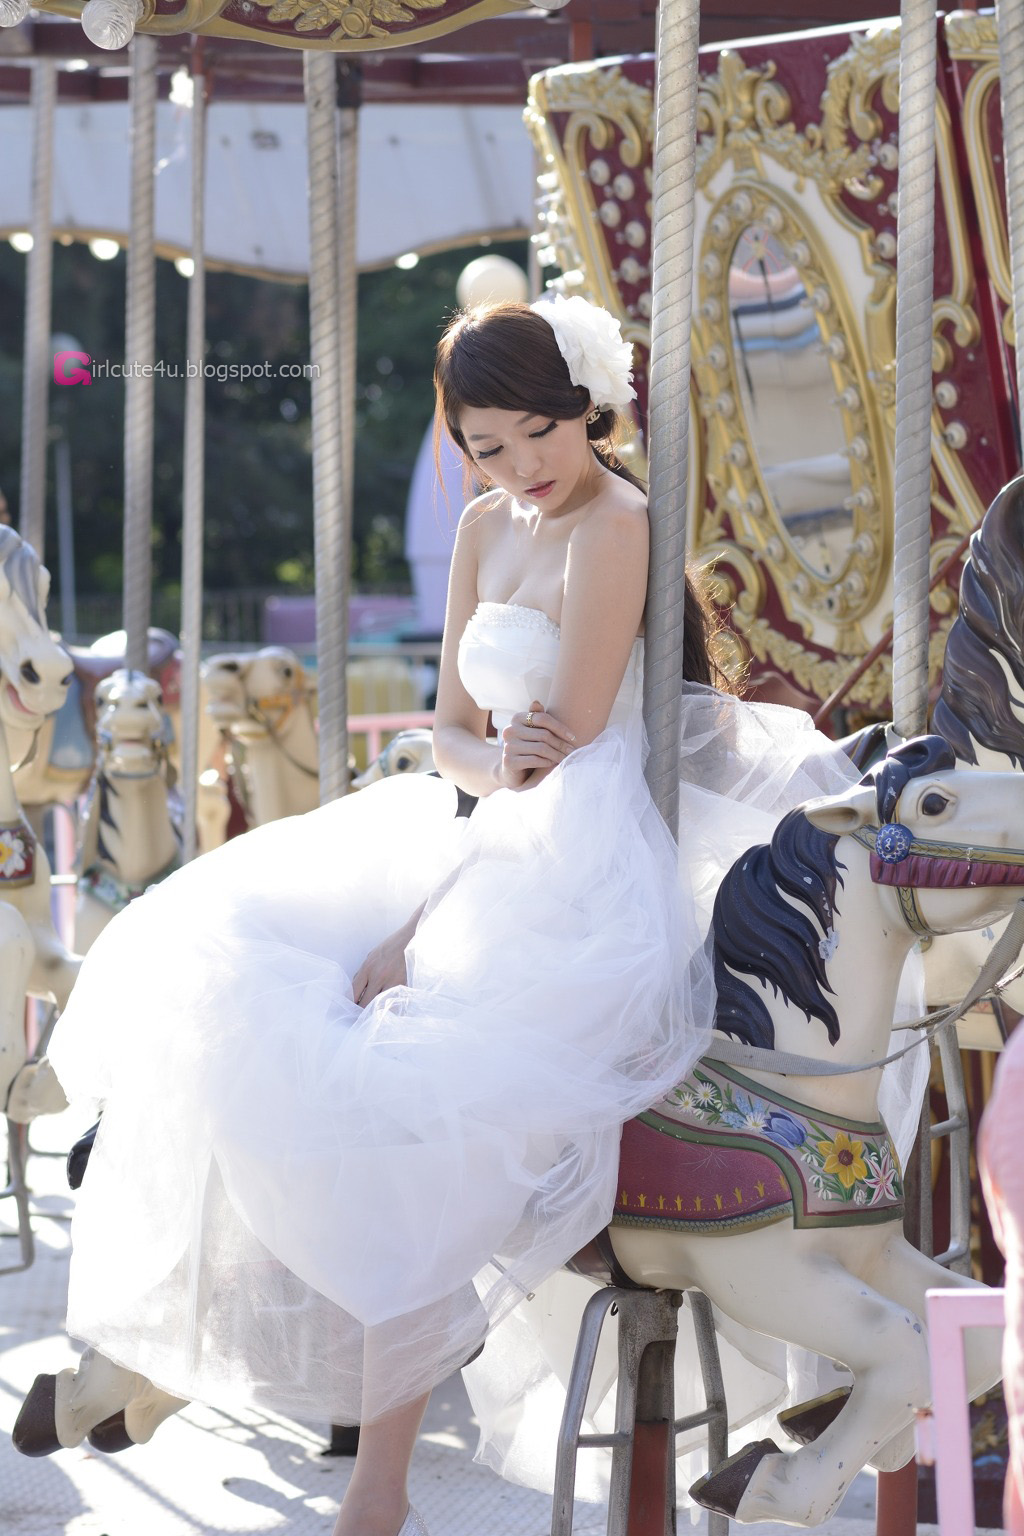 https://2.bp.blogspot.com/-zf2FPF1pdxE/Udwjnog7XRI/AAAAAAAA0FE/djdqf-q1zBQ/s1600/7+Lee+Eun+Hye+in+Wedding+Dress+-+very+cute+asian+girl+-+girlcute4u.blogspot.com.jpg